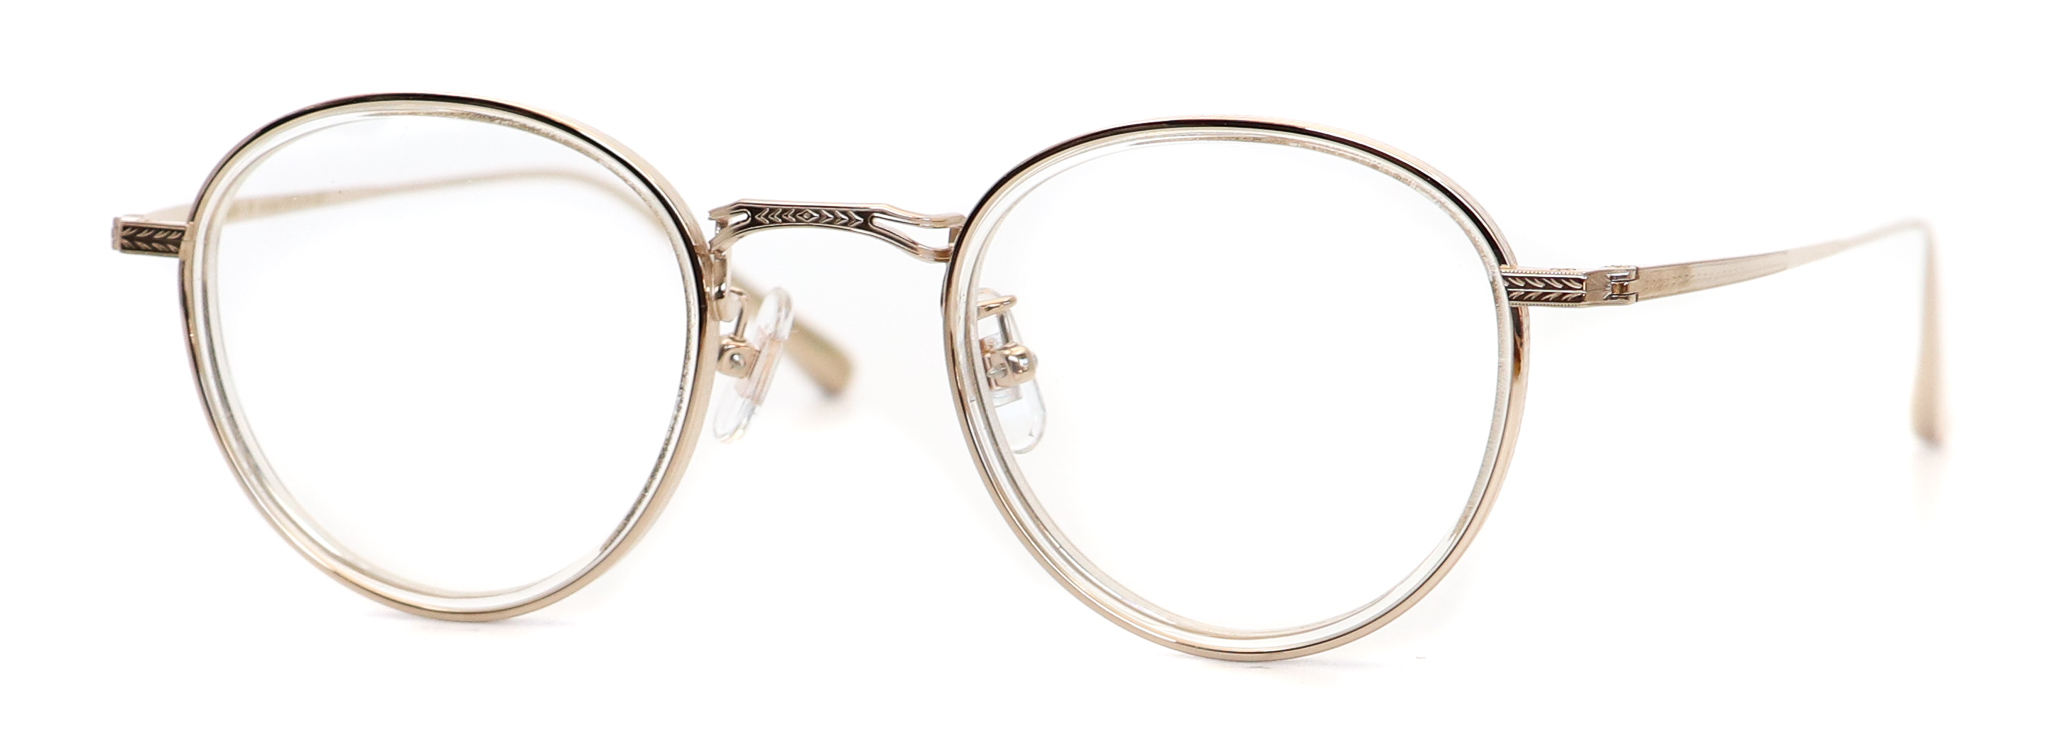 眼鏡のカラータイプC-1 Clear/Gold